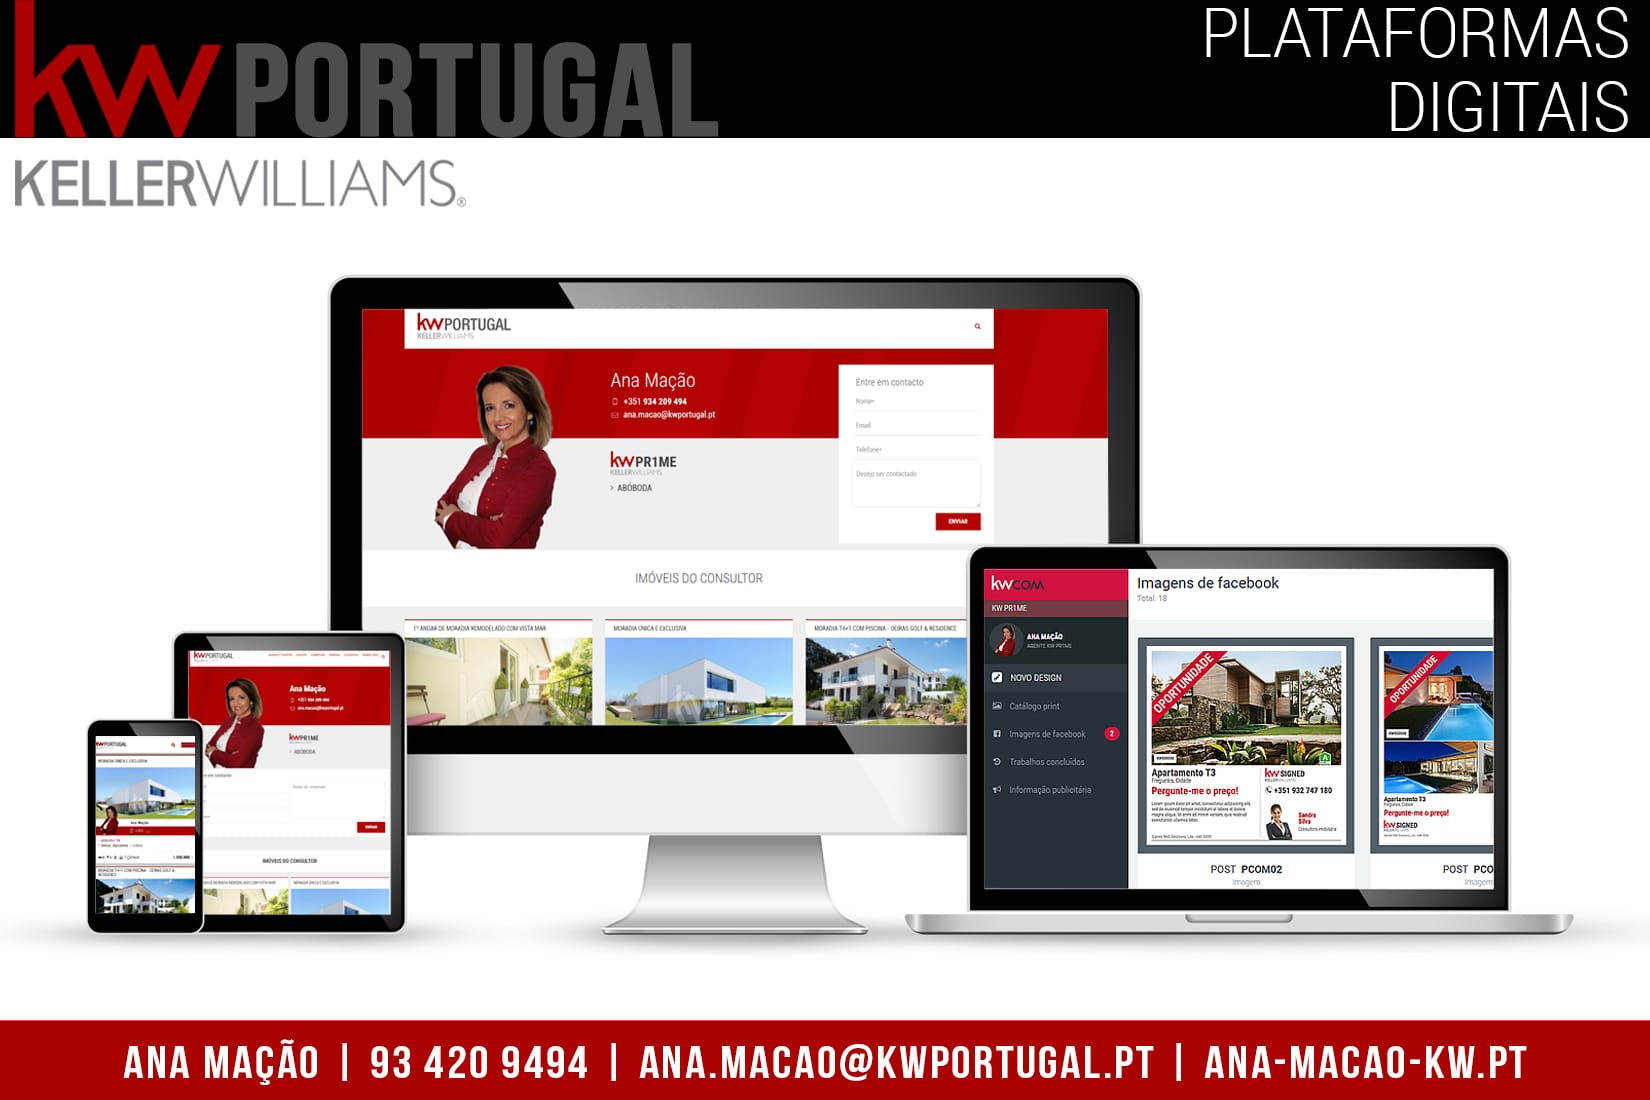 KW-Keller Williams - Les plateformes numériques au service de l'immobilier au Portugal